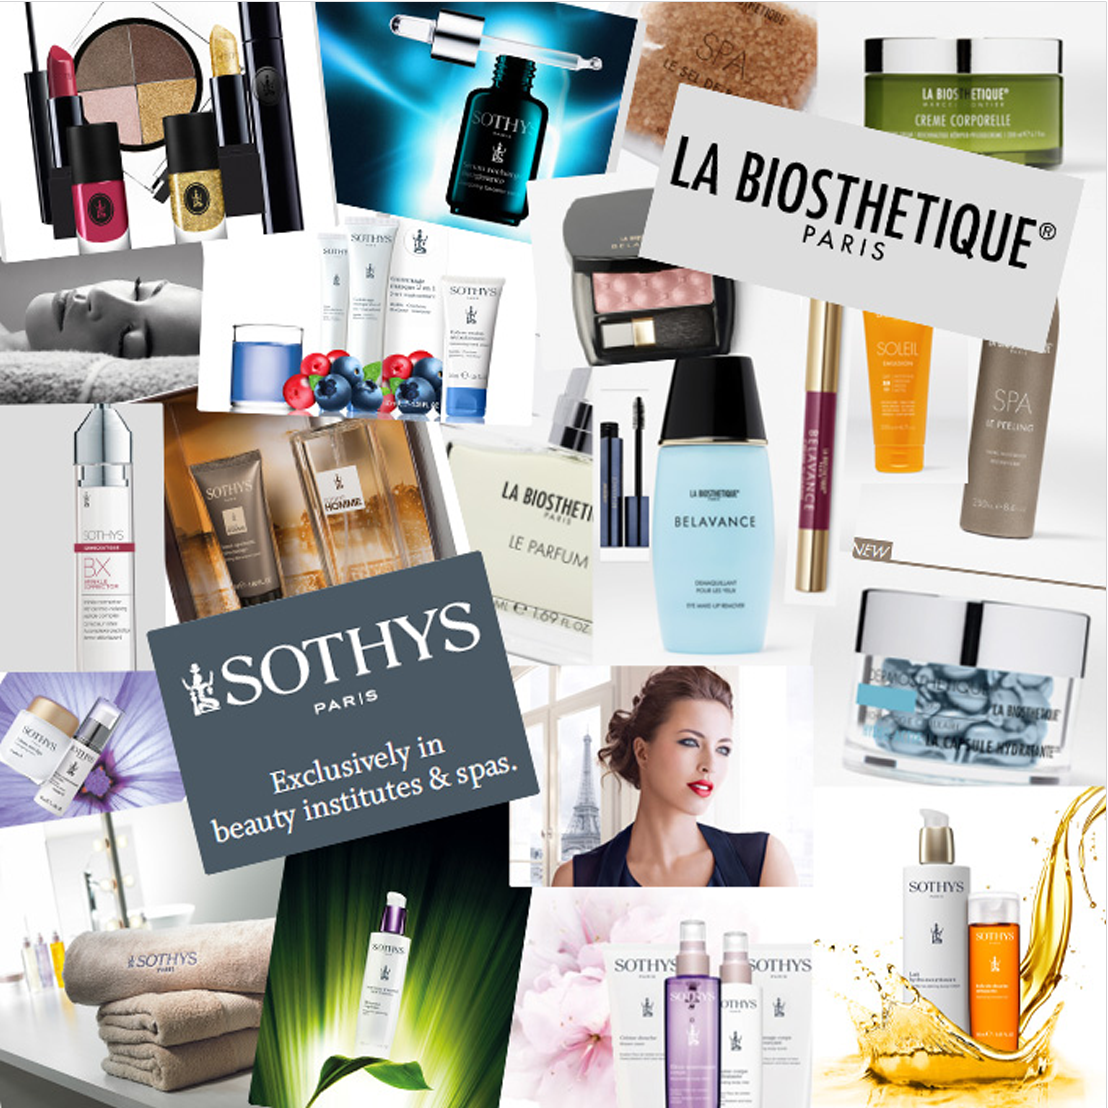 Collage of La Biosthetic Paris and Sothys Paris Products